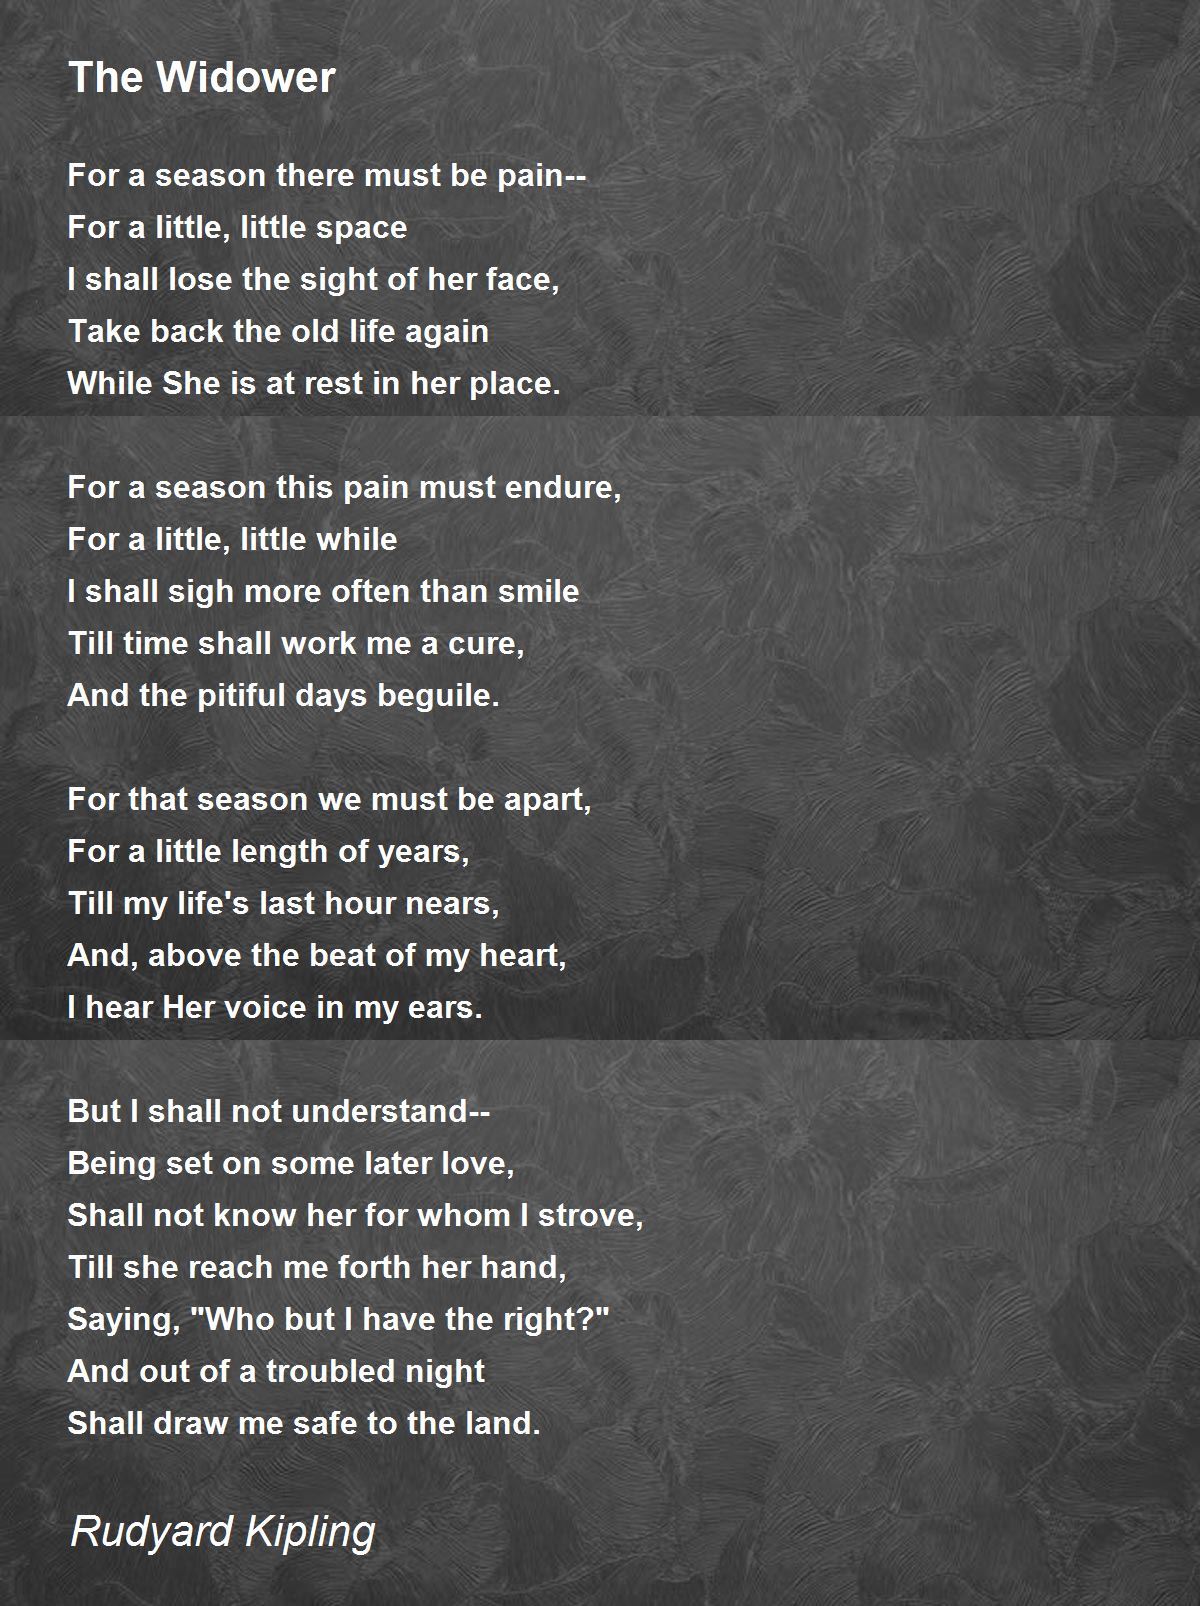 The Widower Poem by Rudyard Kipling - Poem Hunter